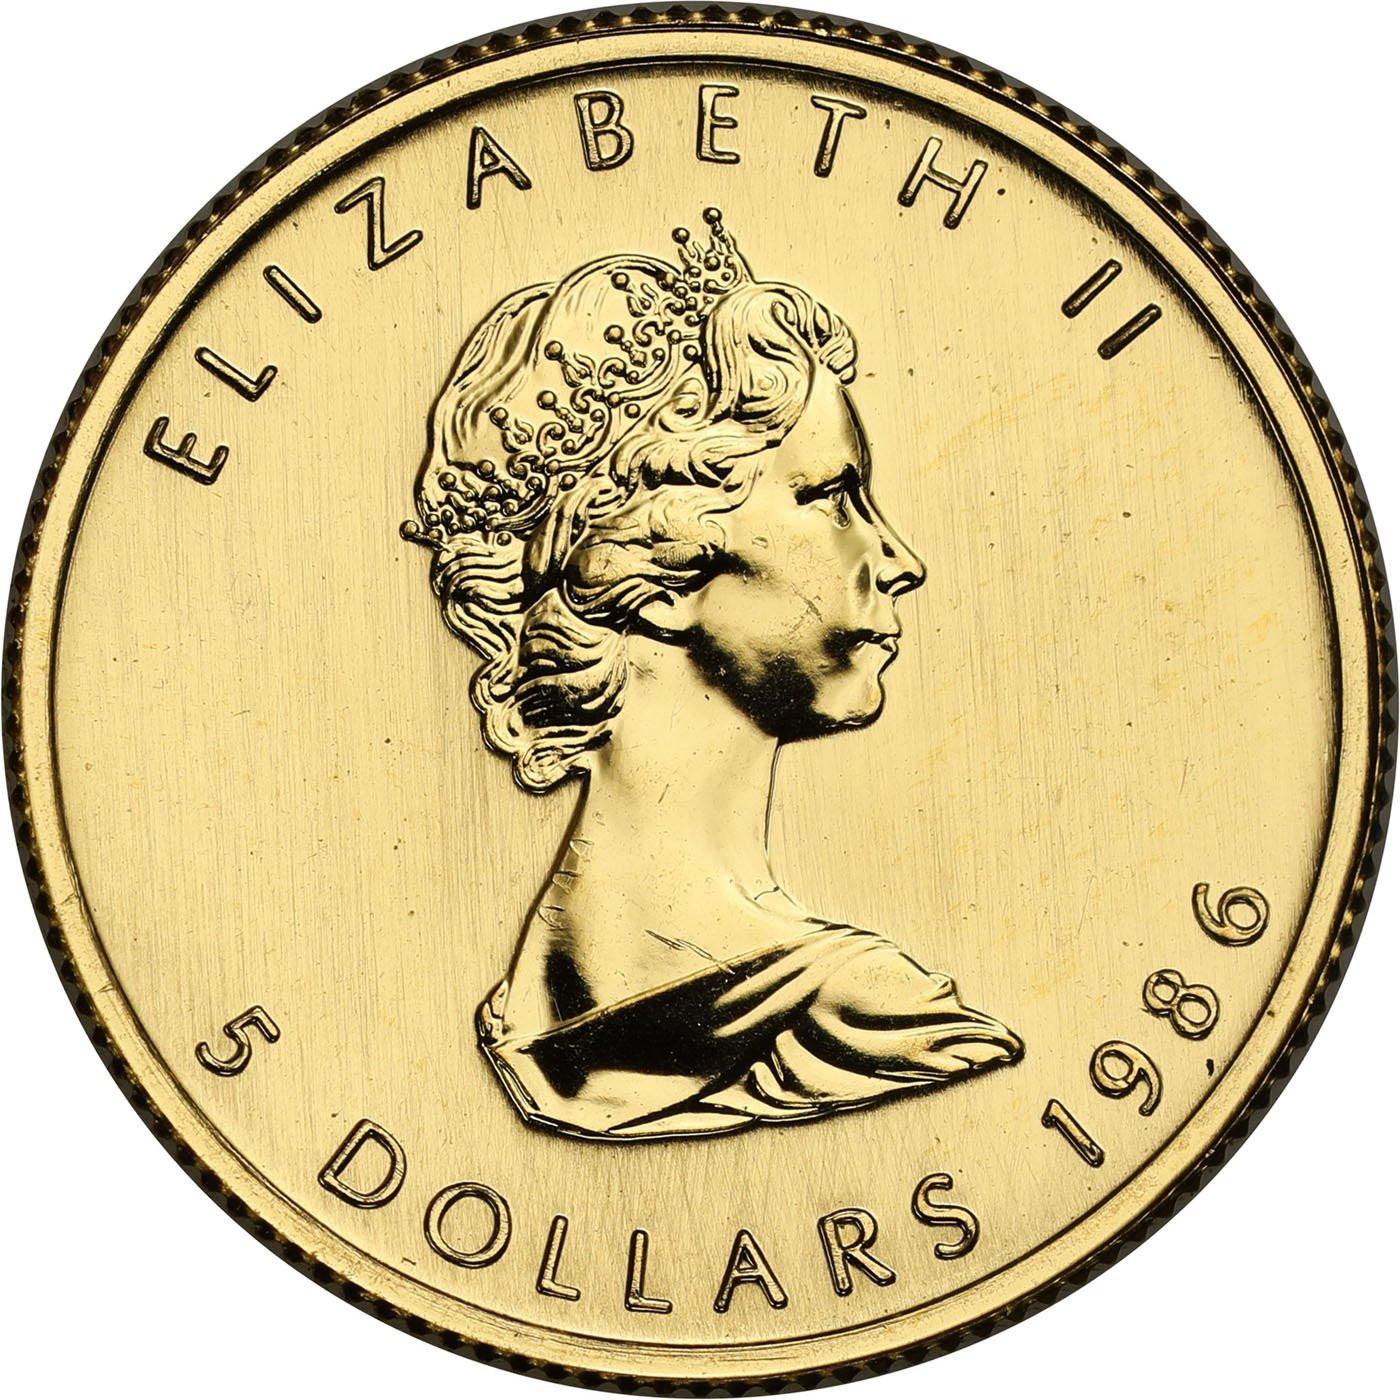 Kanada 5 dolarów 1986 liść klonowy 1/10 uncji złota